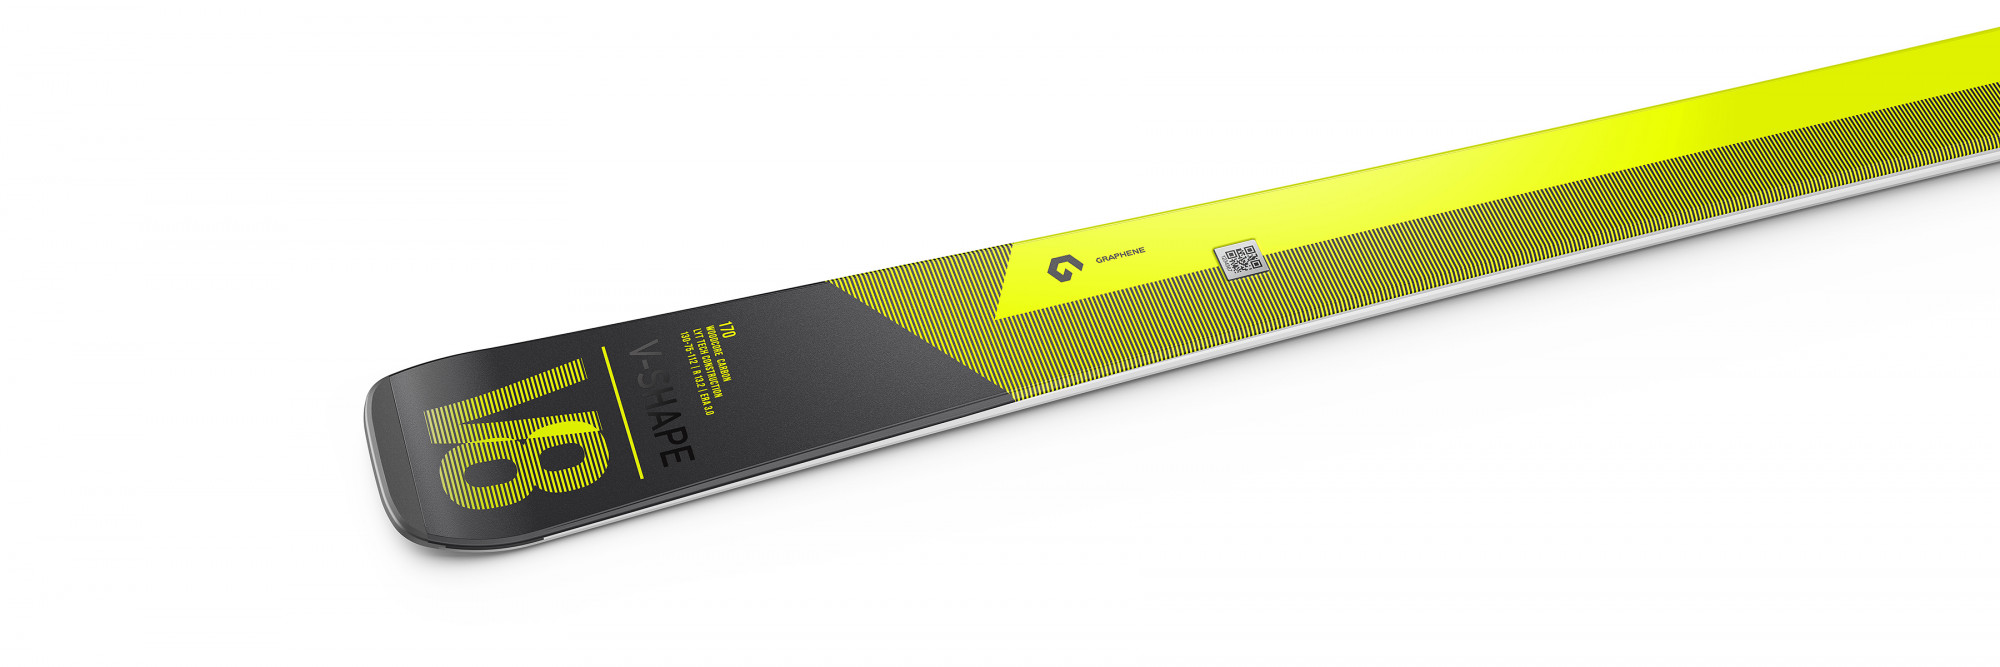 Горные лыжи Head V-Shape V8 LYT-PR + PR 11 GW 2022 black/yellow, 170 см